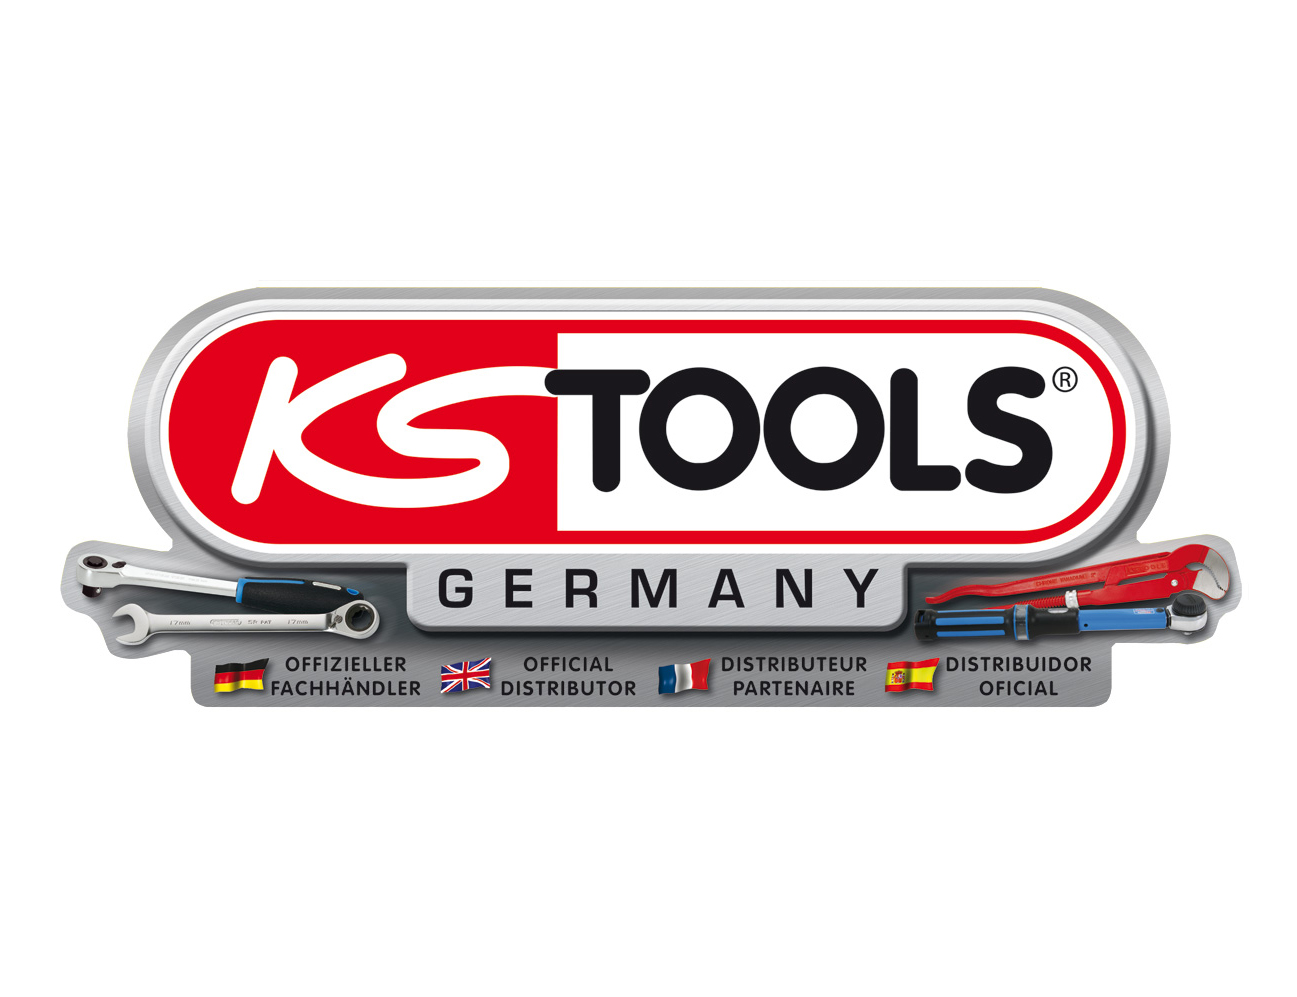 KS Tools 9072172. Ks tools